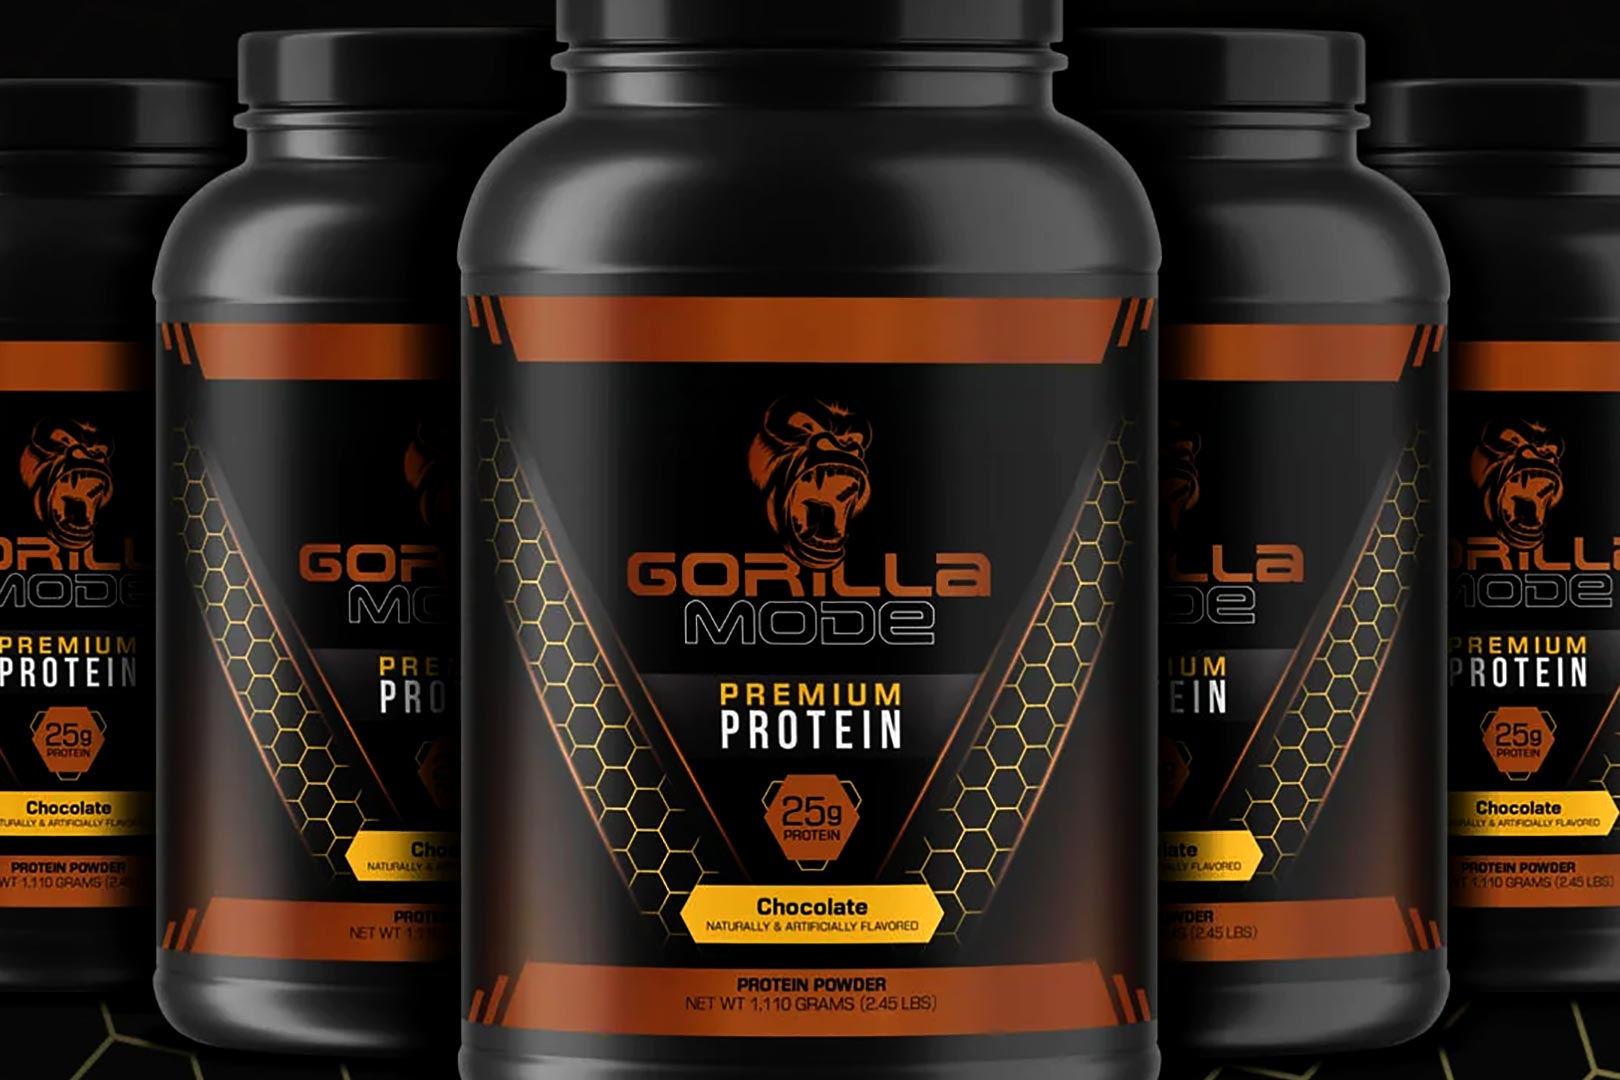 Gorilla Mode Return Chocolate Premium Protein